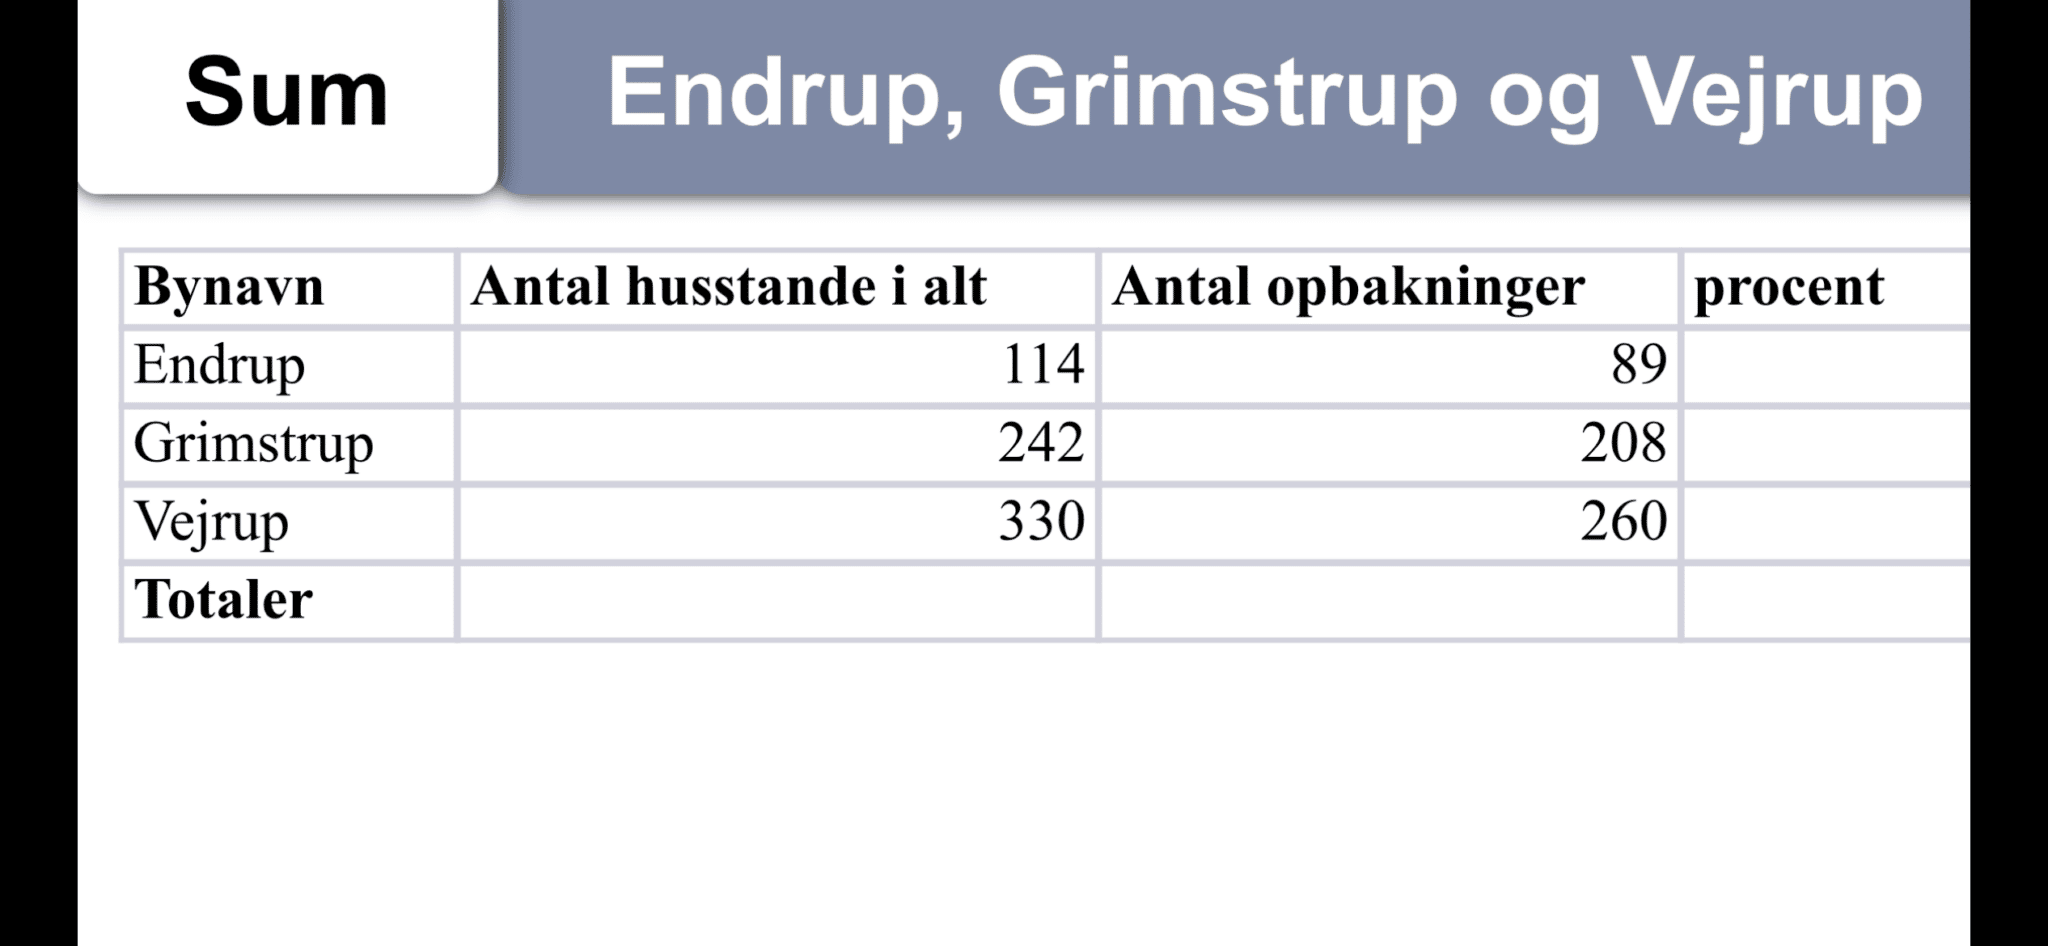 Hermed beretning og regnskab for årsmøde afholdt den 22. november i Grimstrup Forsamlingshus.